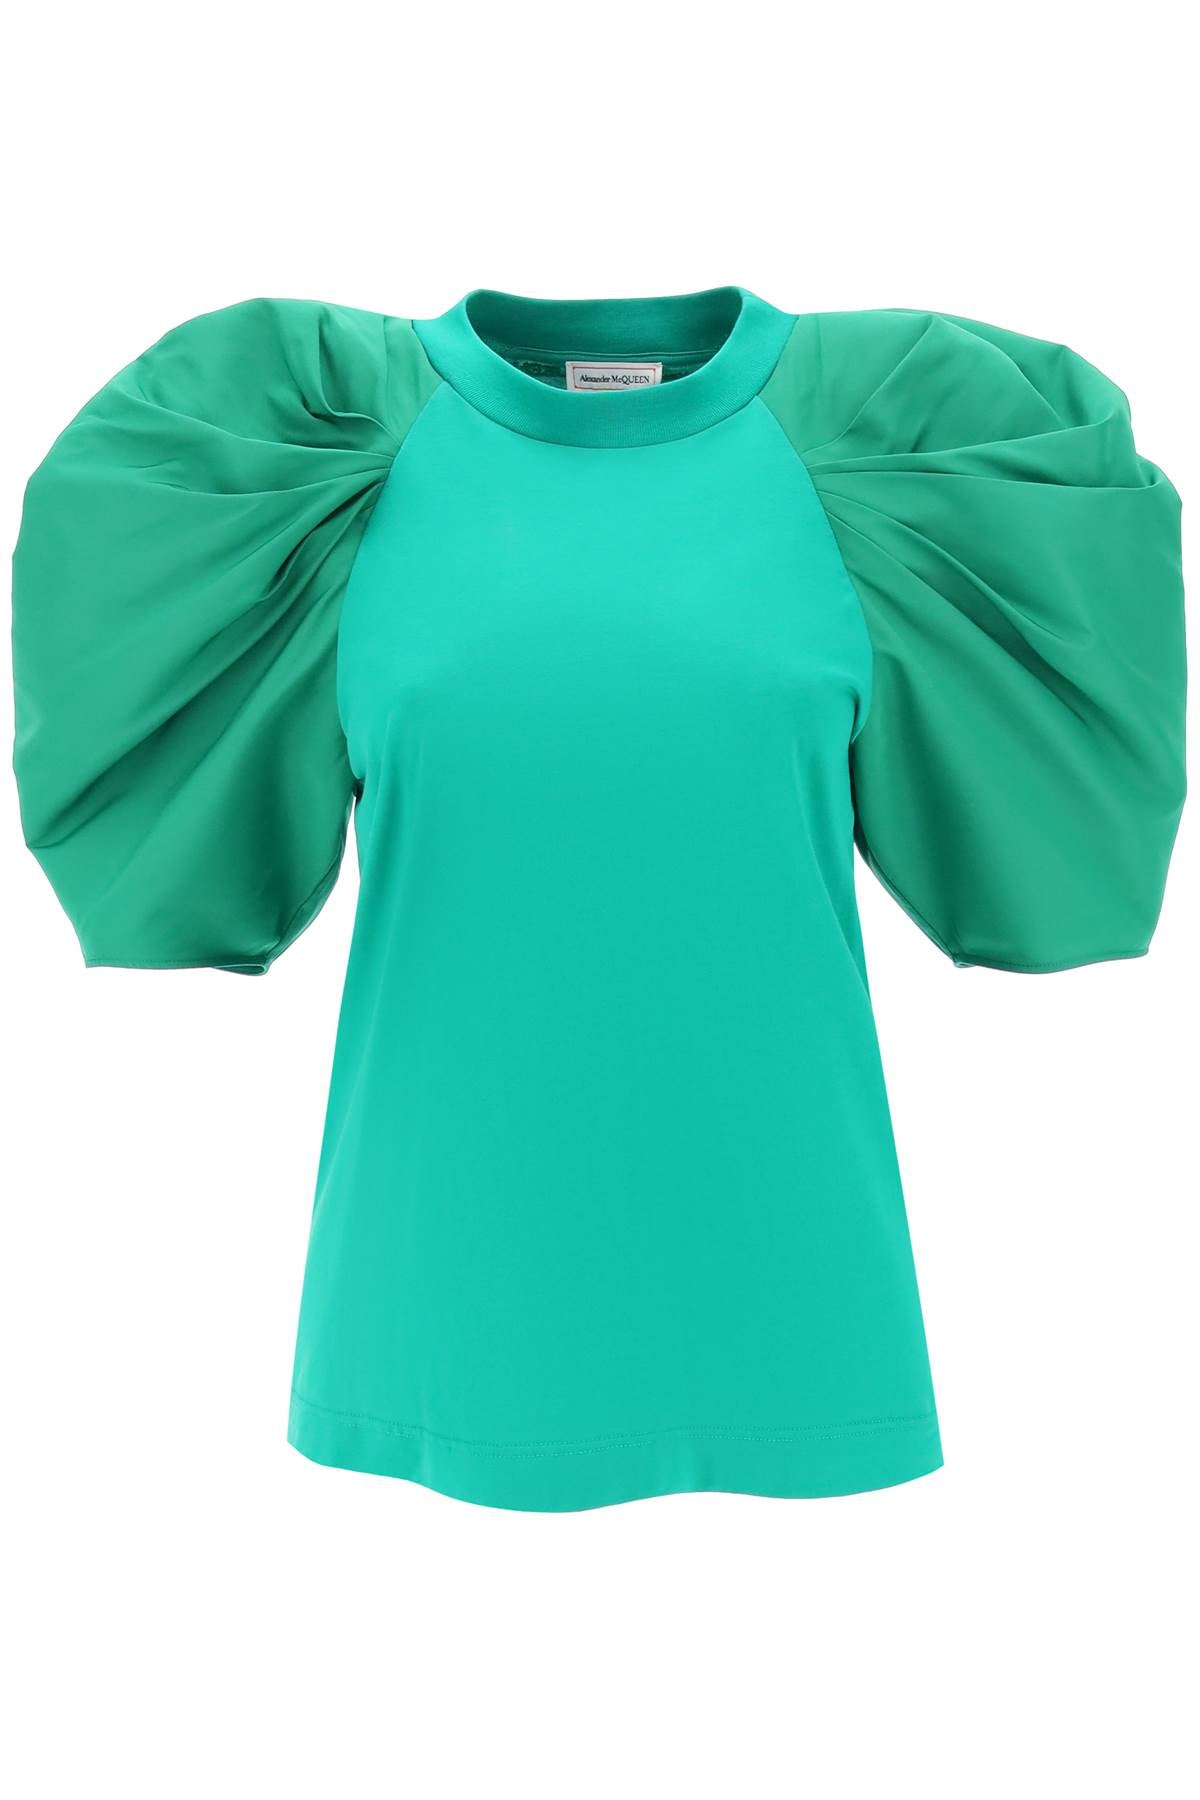 Shop Alexander Mcqueen Green Ruched Balloon Sleeve T-shirt For Women